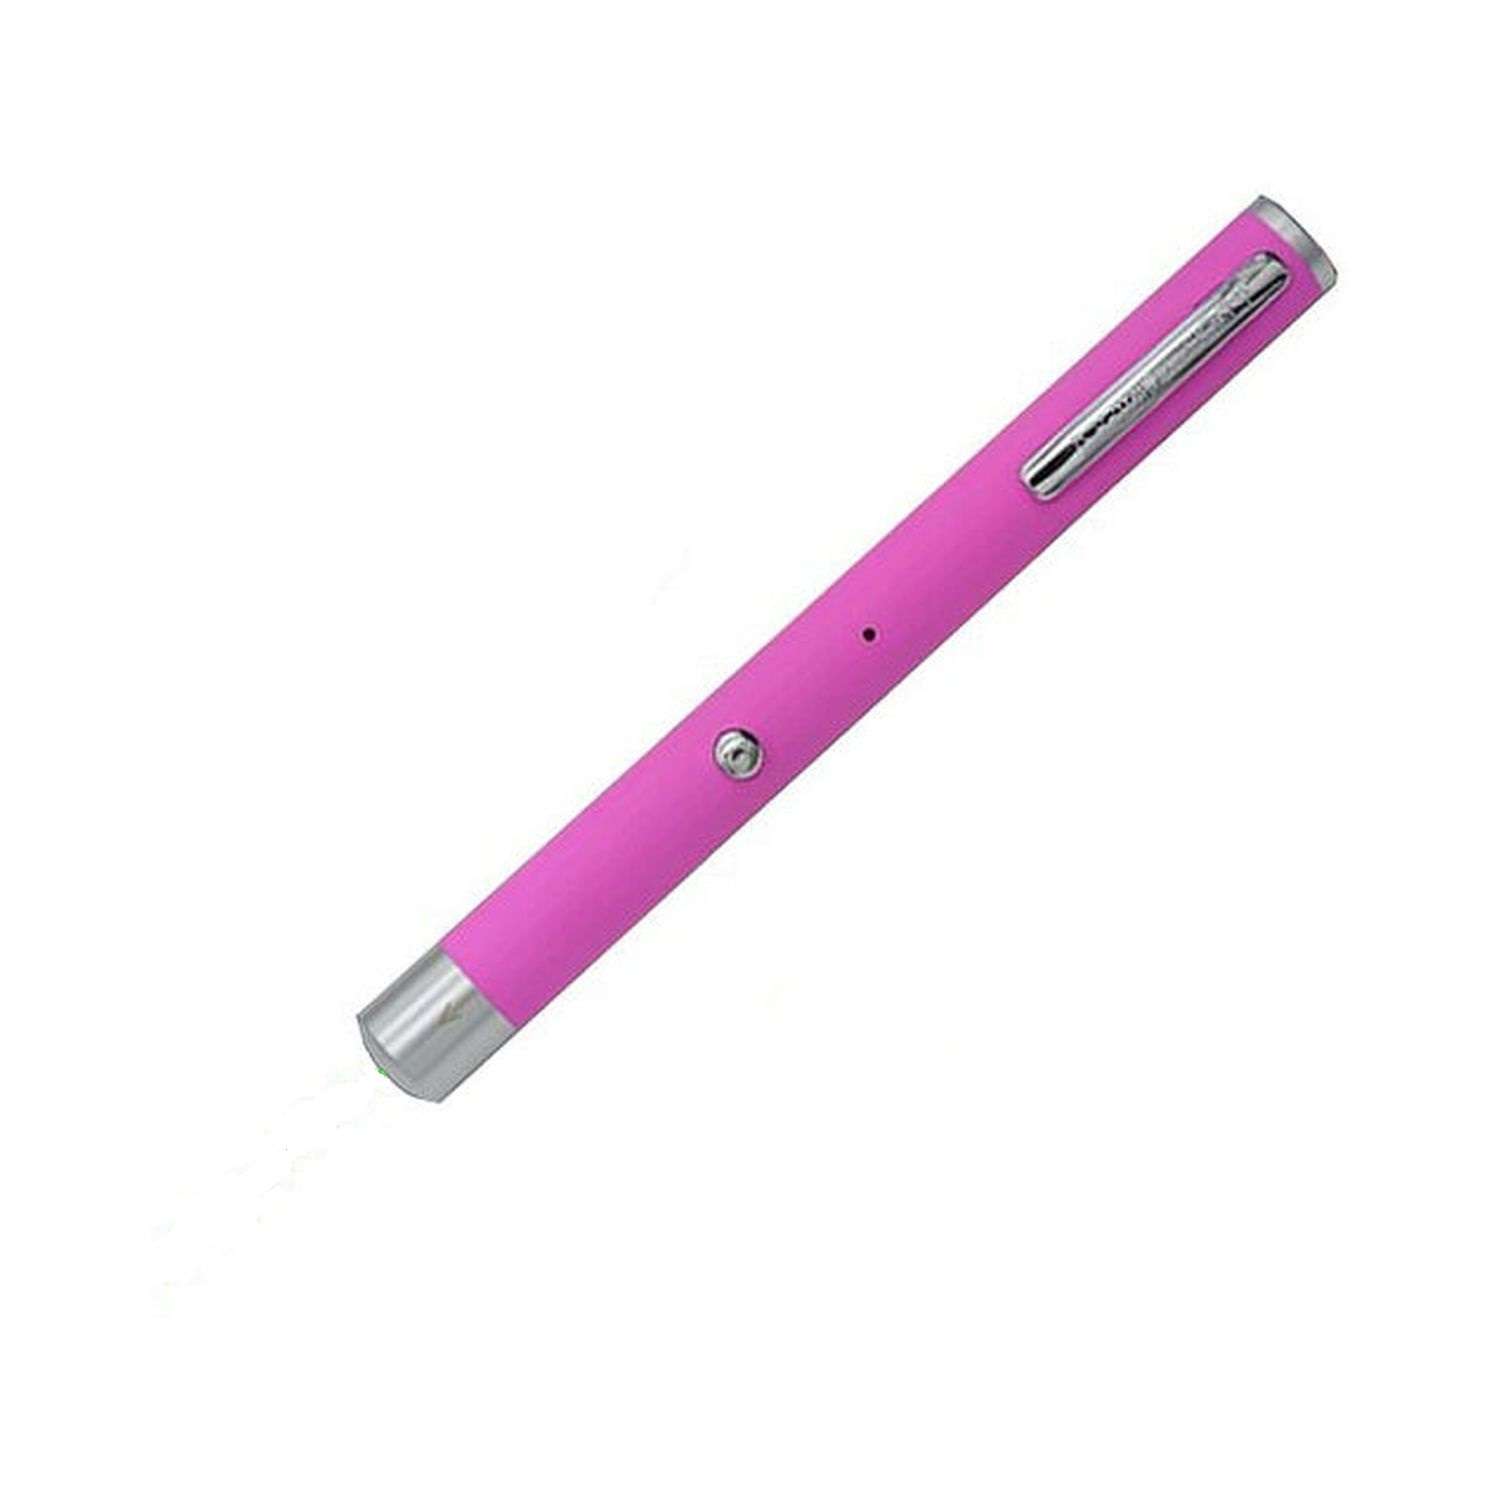 Лазерная указка Seichi с USB-кабелем розовая - фото 1